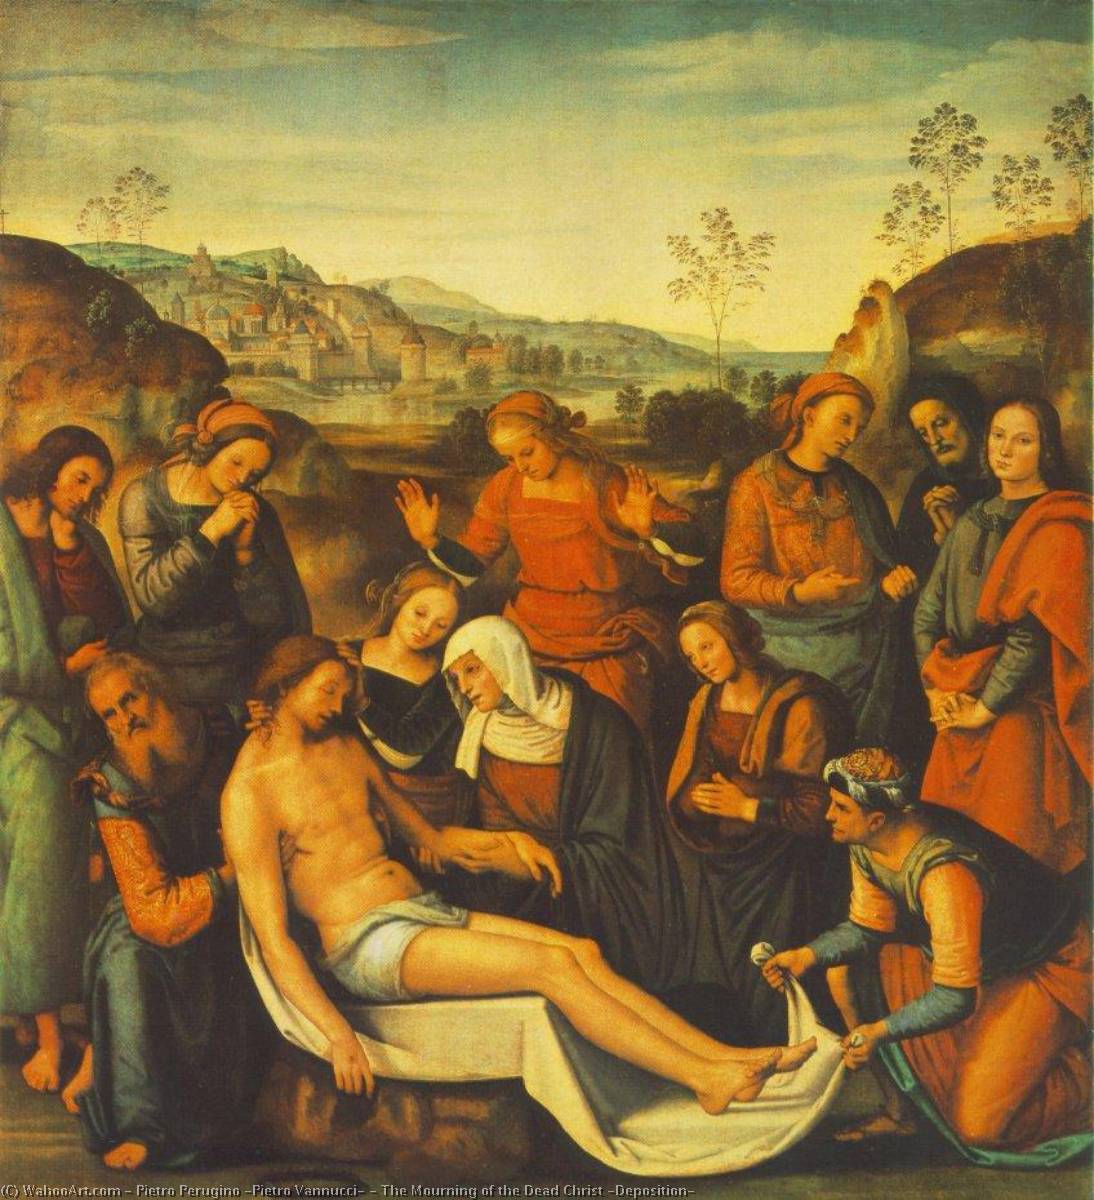 Comprar Reproducciones De Arte Del Museo El Movimiento del Cristo Muerto (Deposición), 1495 de Pietro Perugino (Pietro Vannucci) (1446-1523) | ArtsDot.com